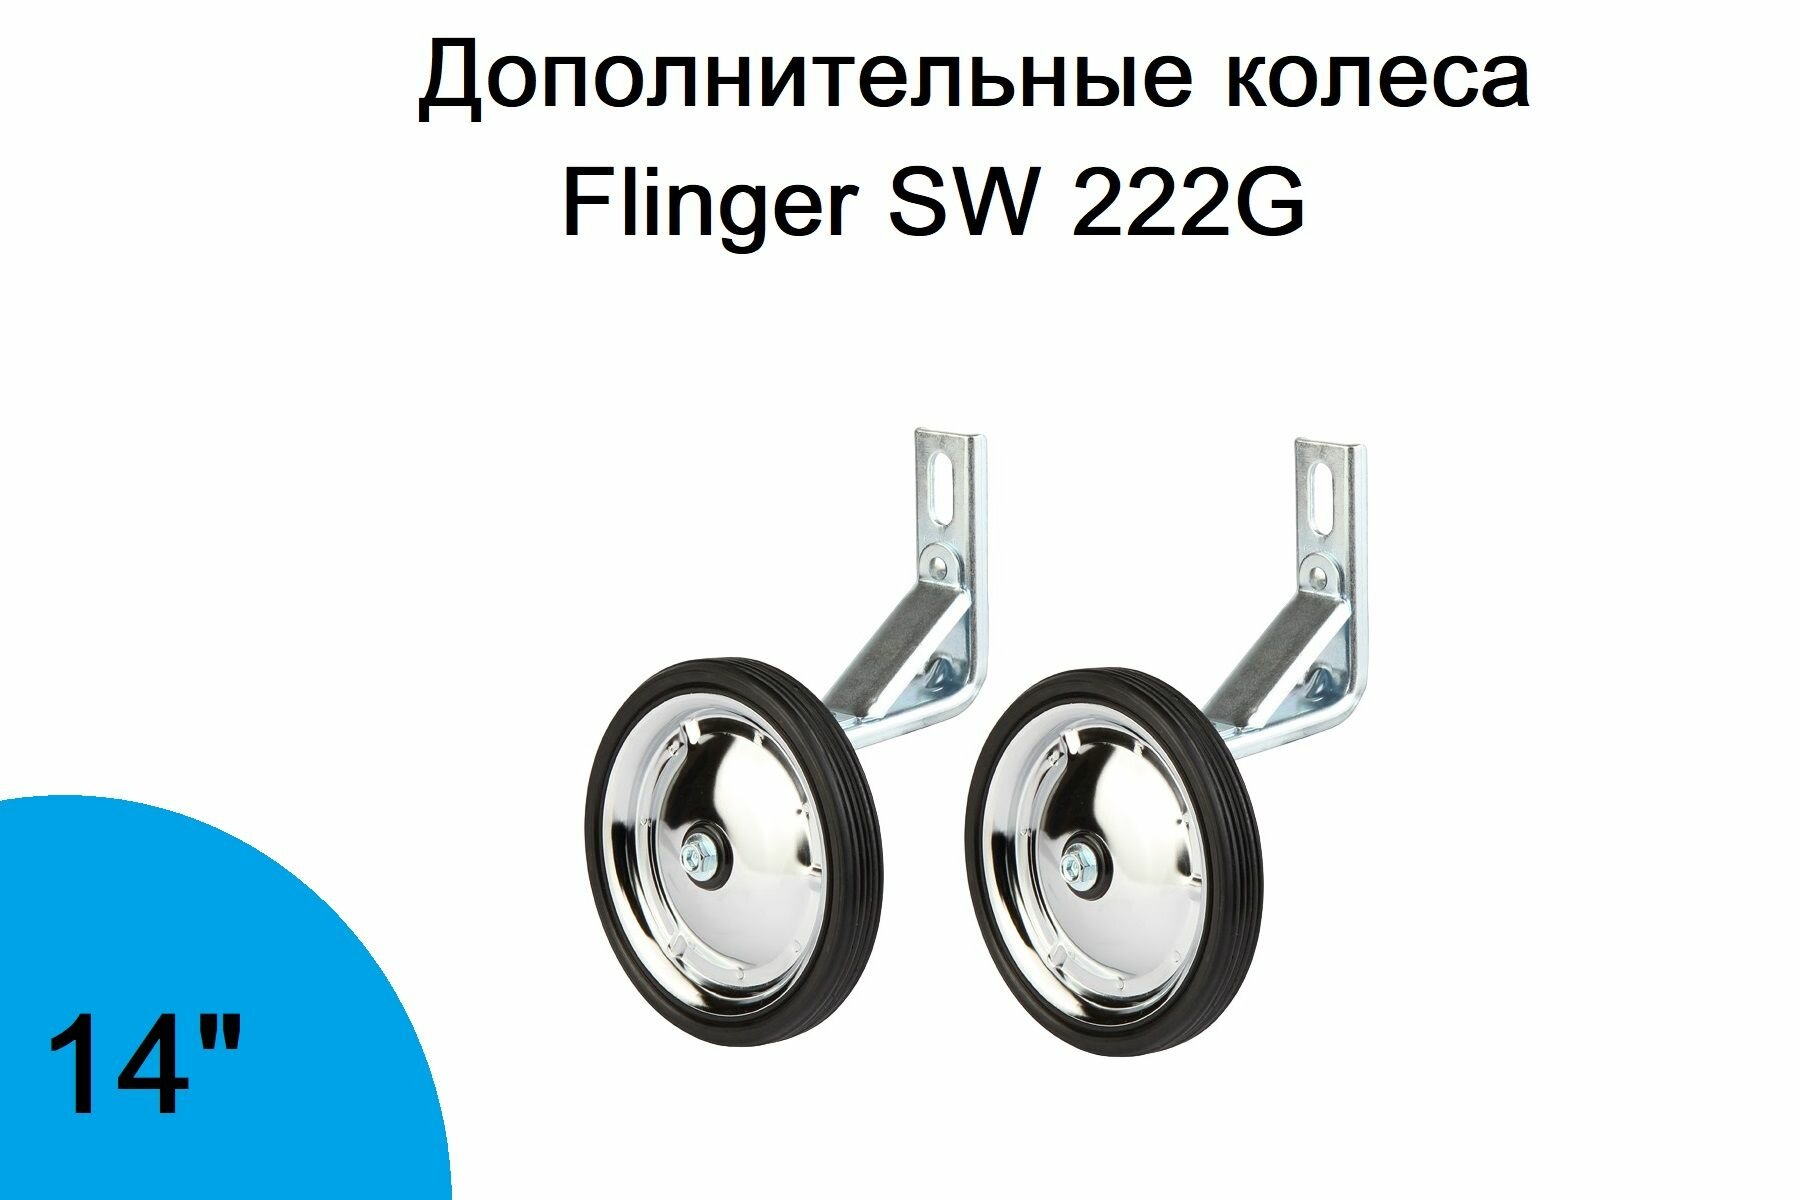 Колеса дополнительные Flinger SW 222G, для 14" велосипедов, сталь, резина, арт. 630001